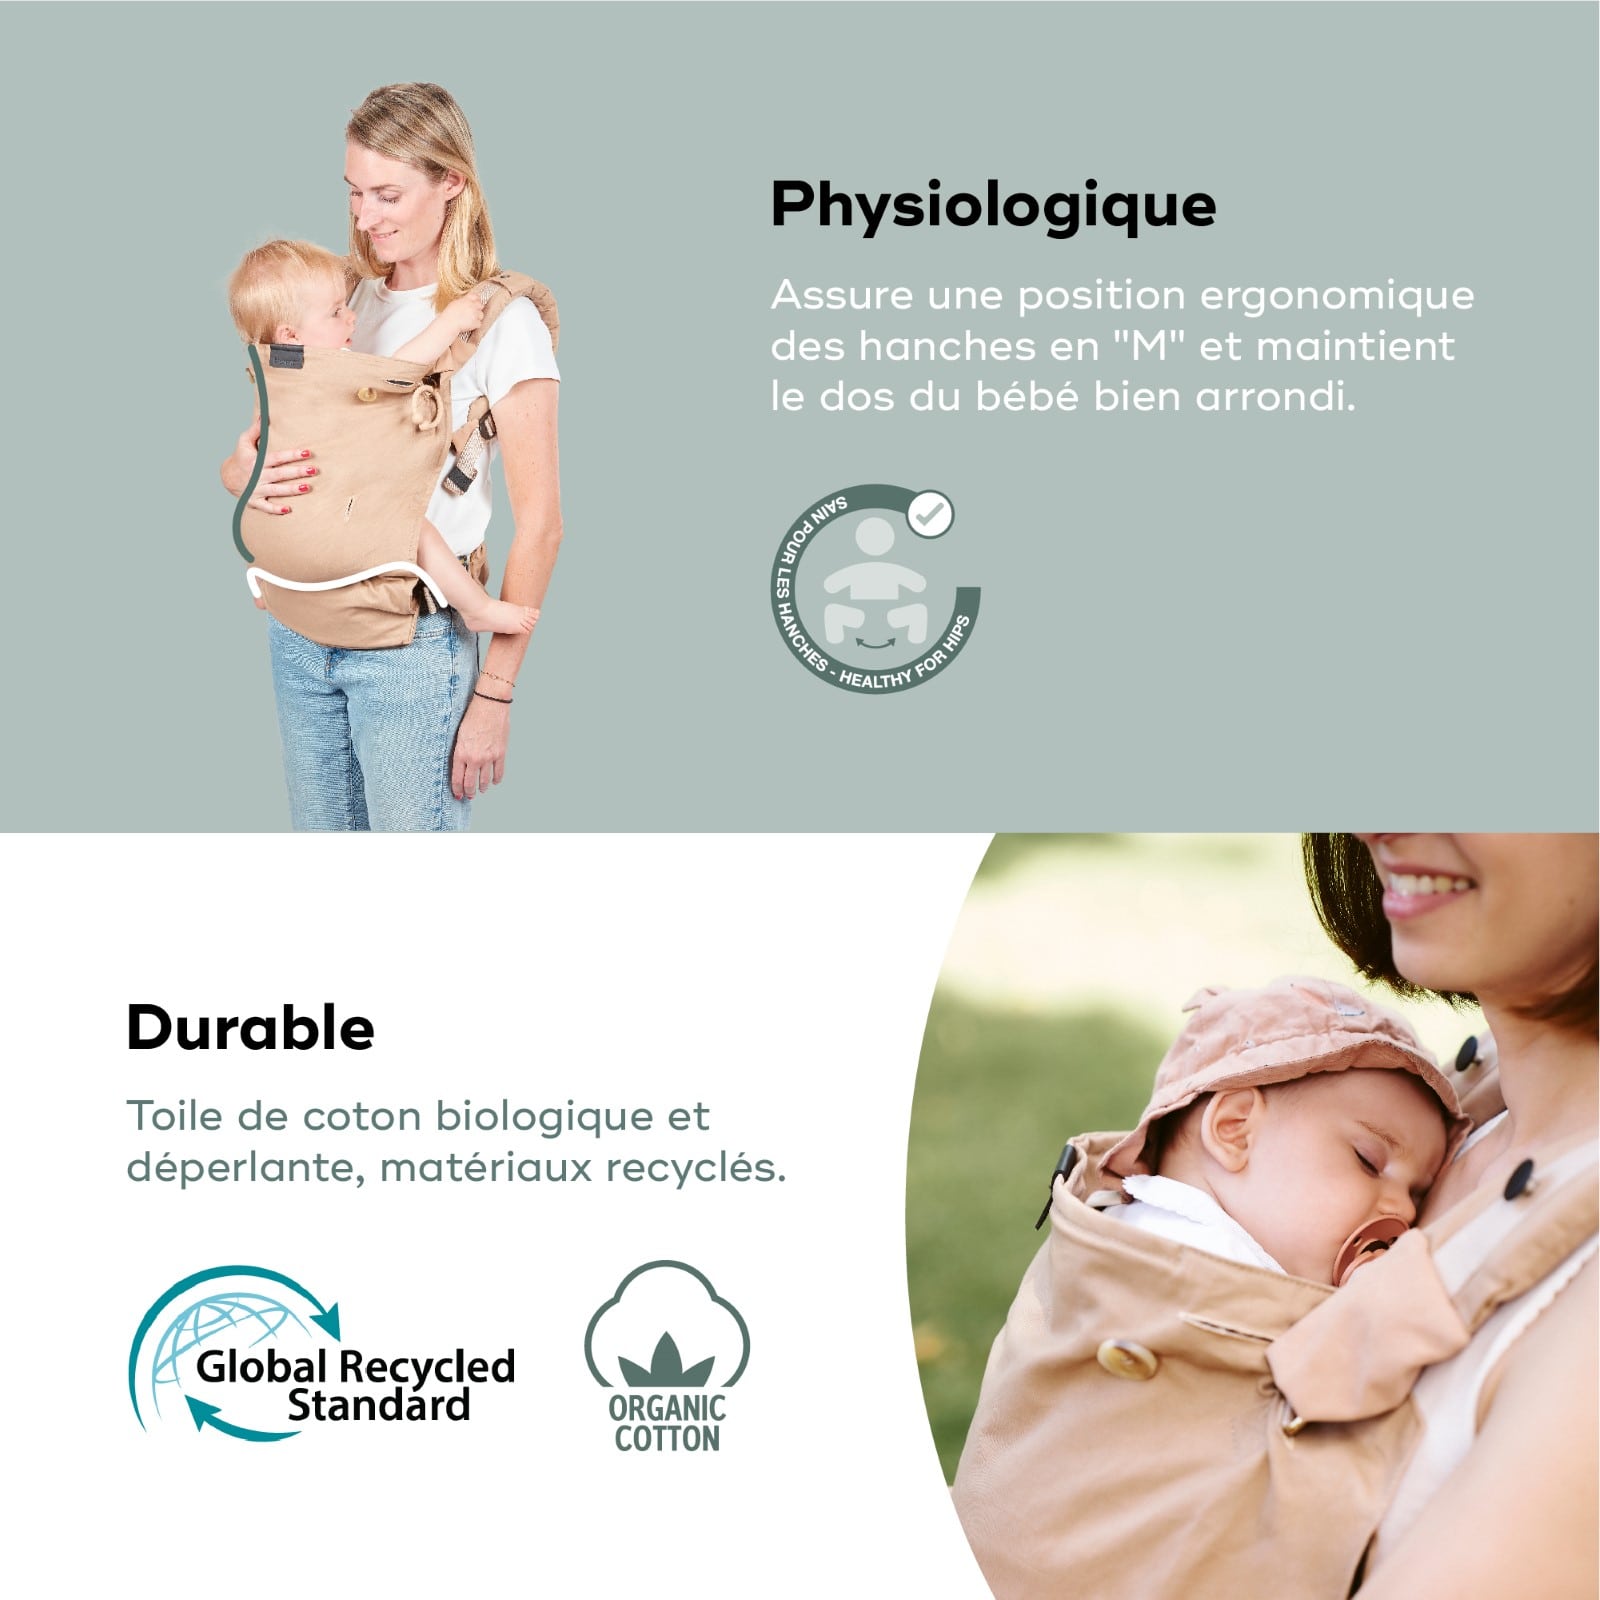 Porte bebe, Physiologique, évolutif, ergonomique, Dès la naissance